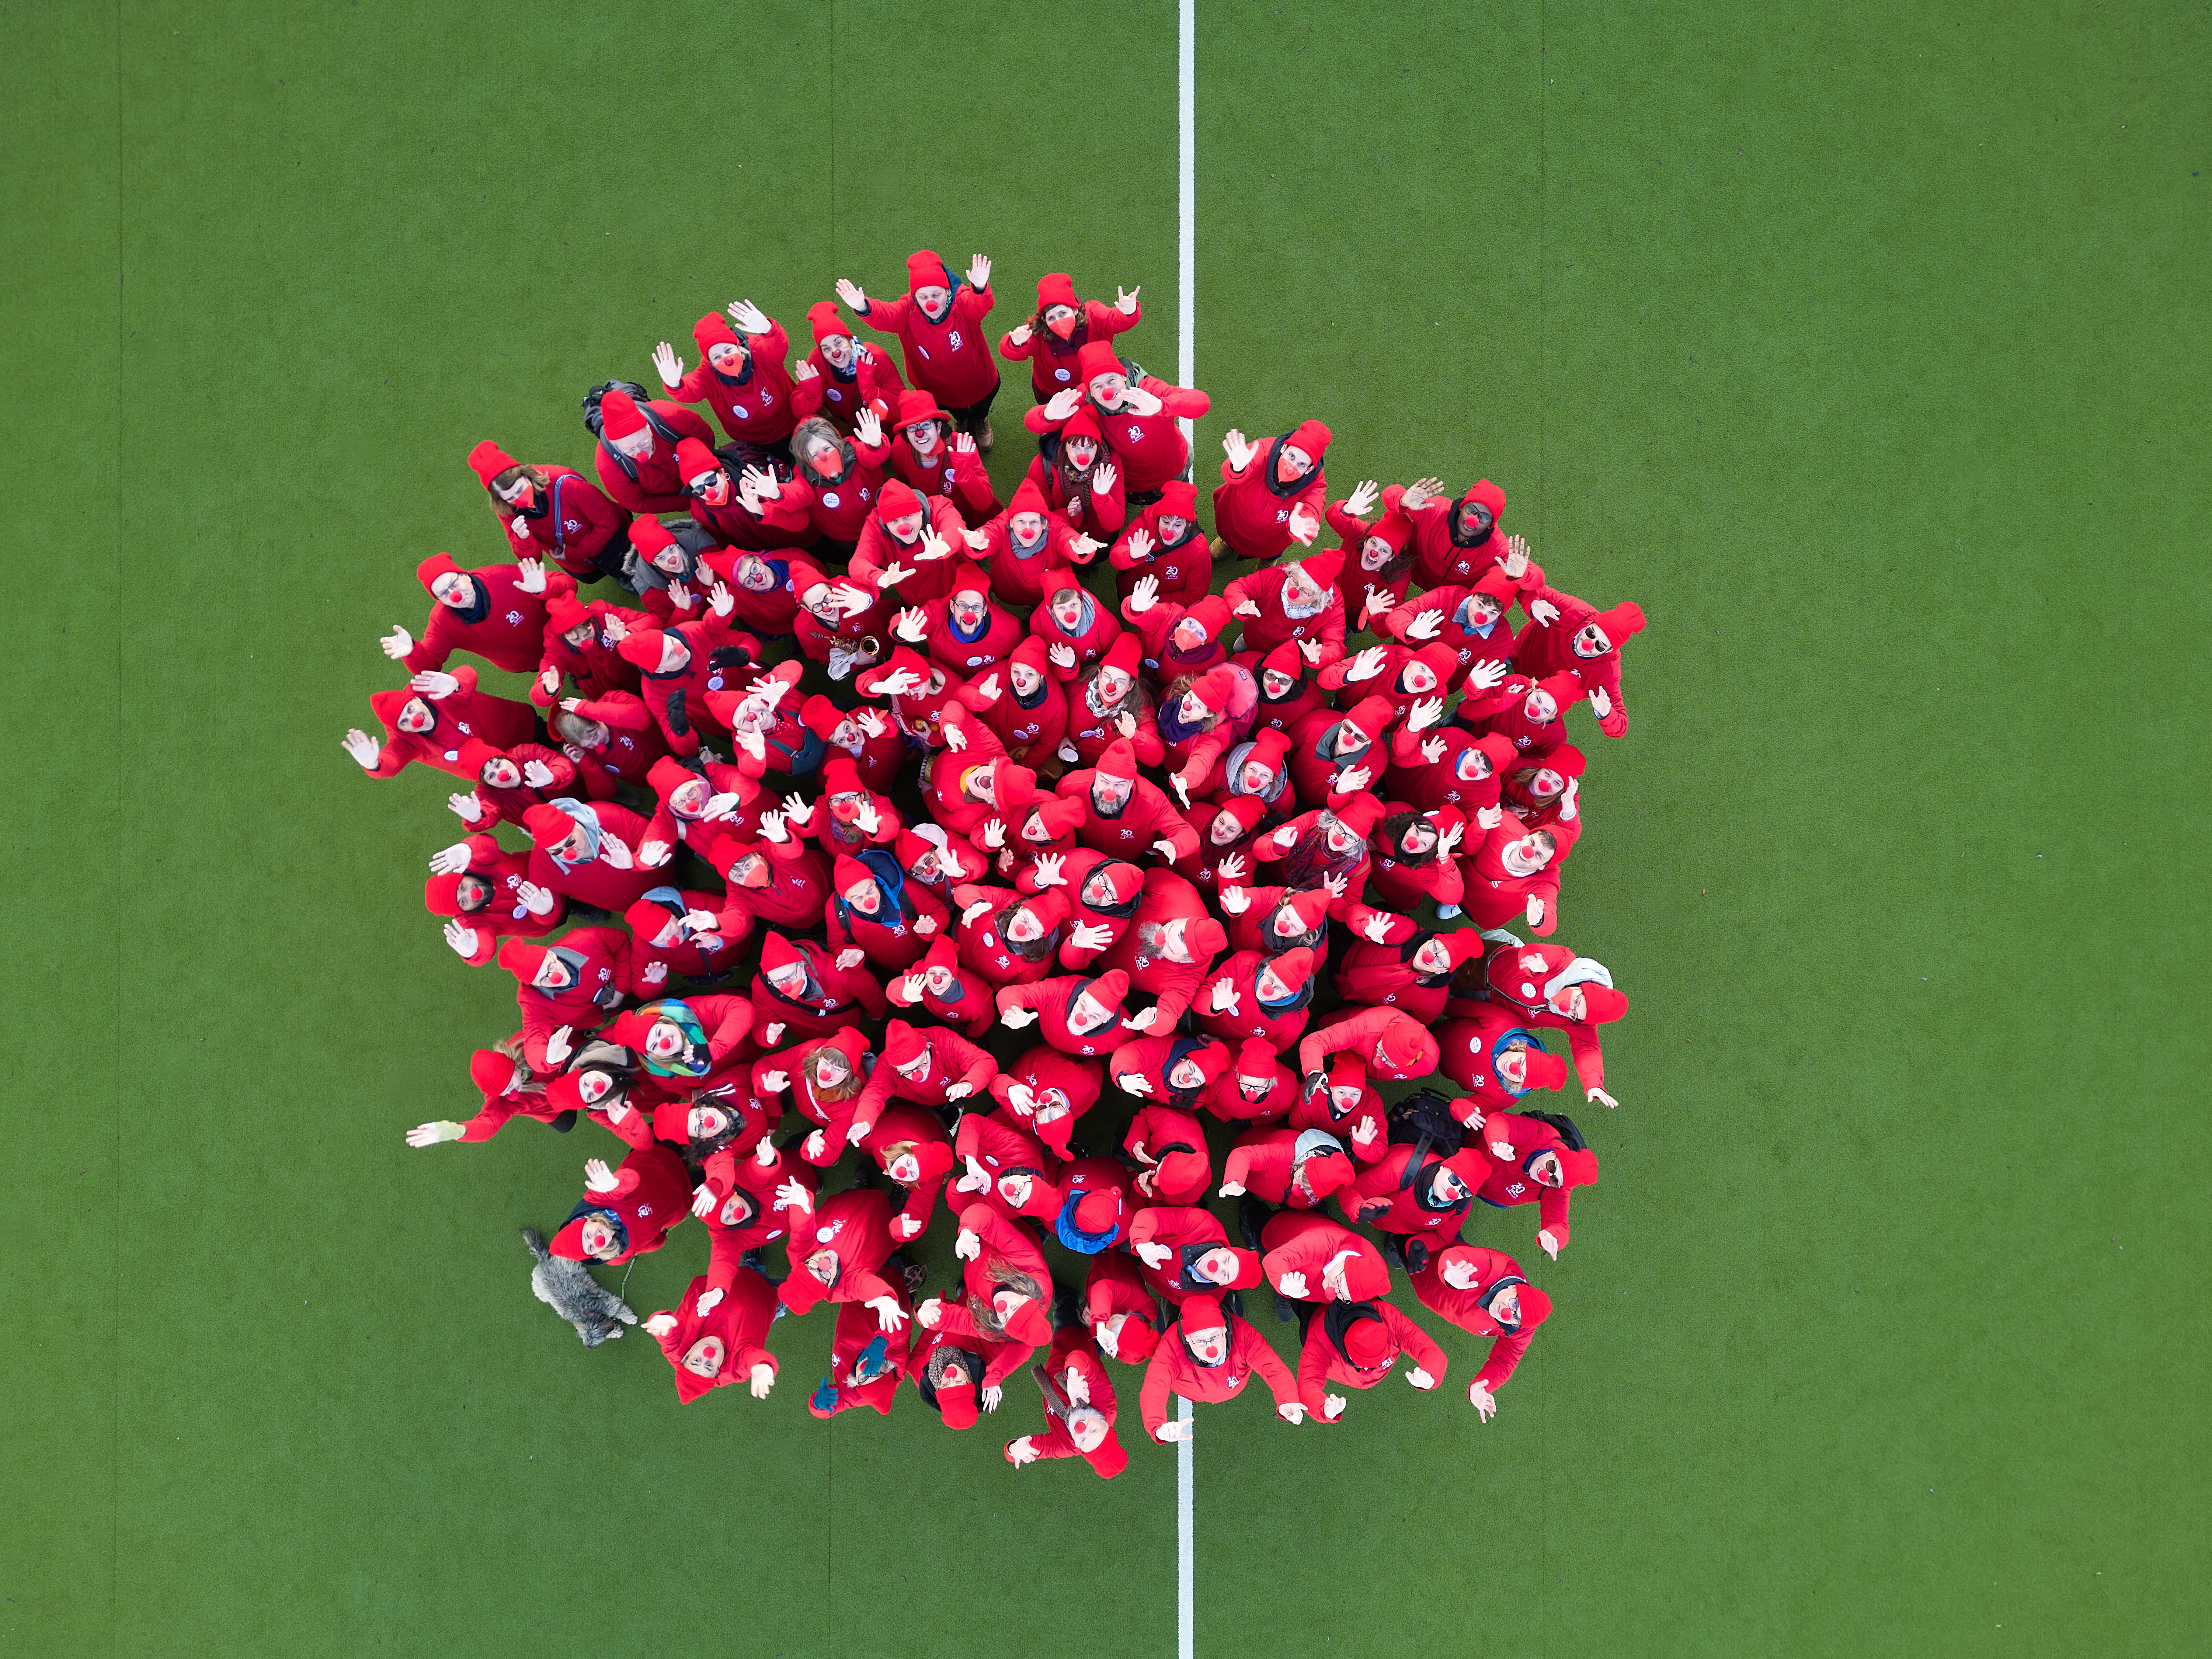 Menschen in Rot bilden eine riesige Clownnase auf einem Spielfeld